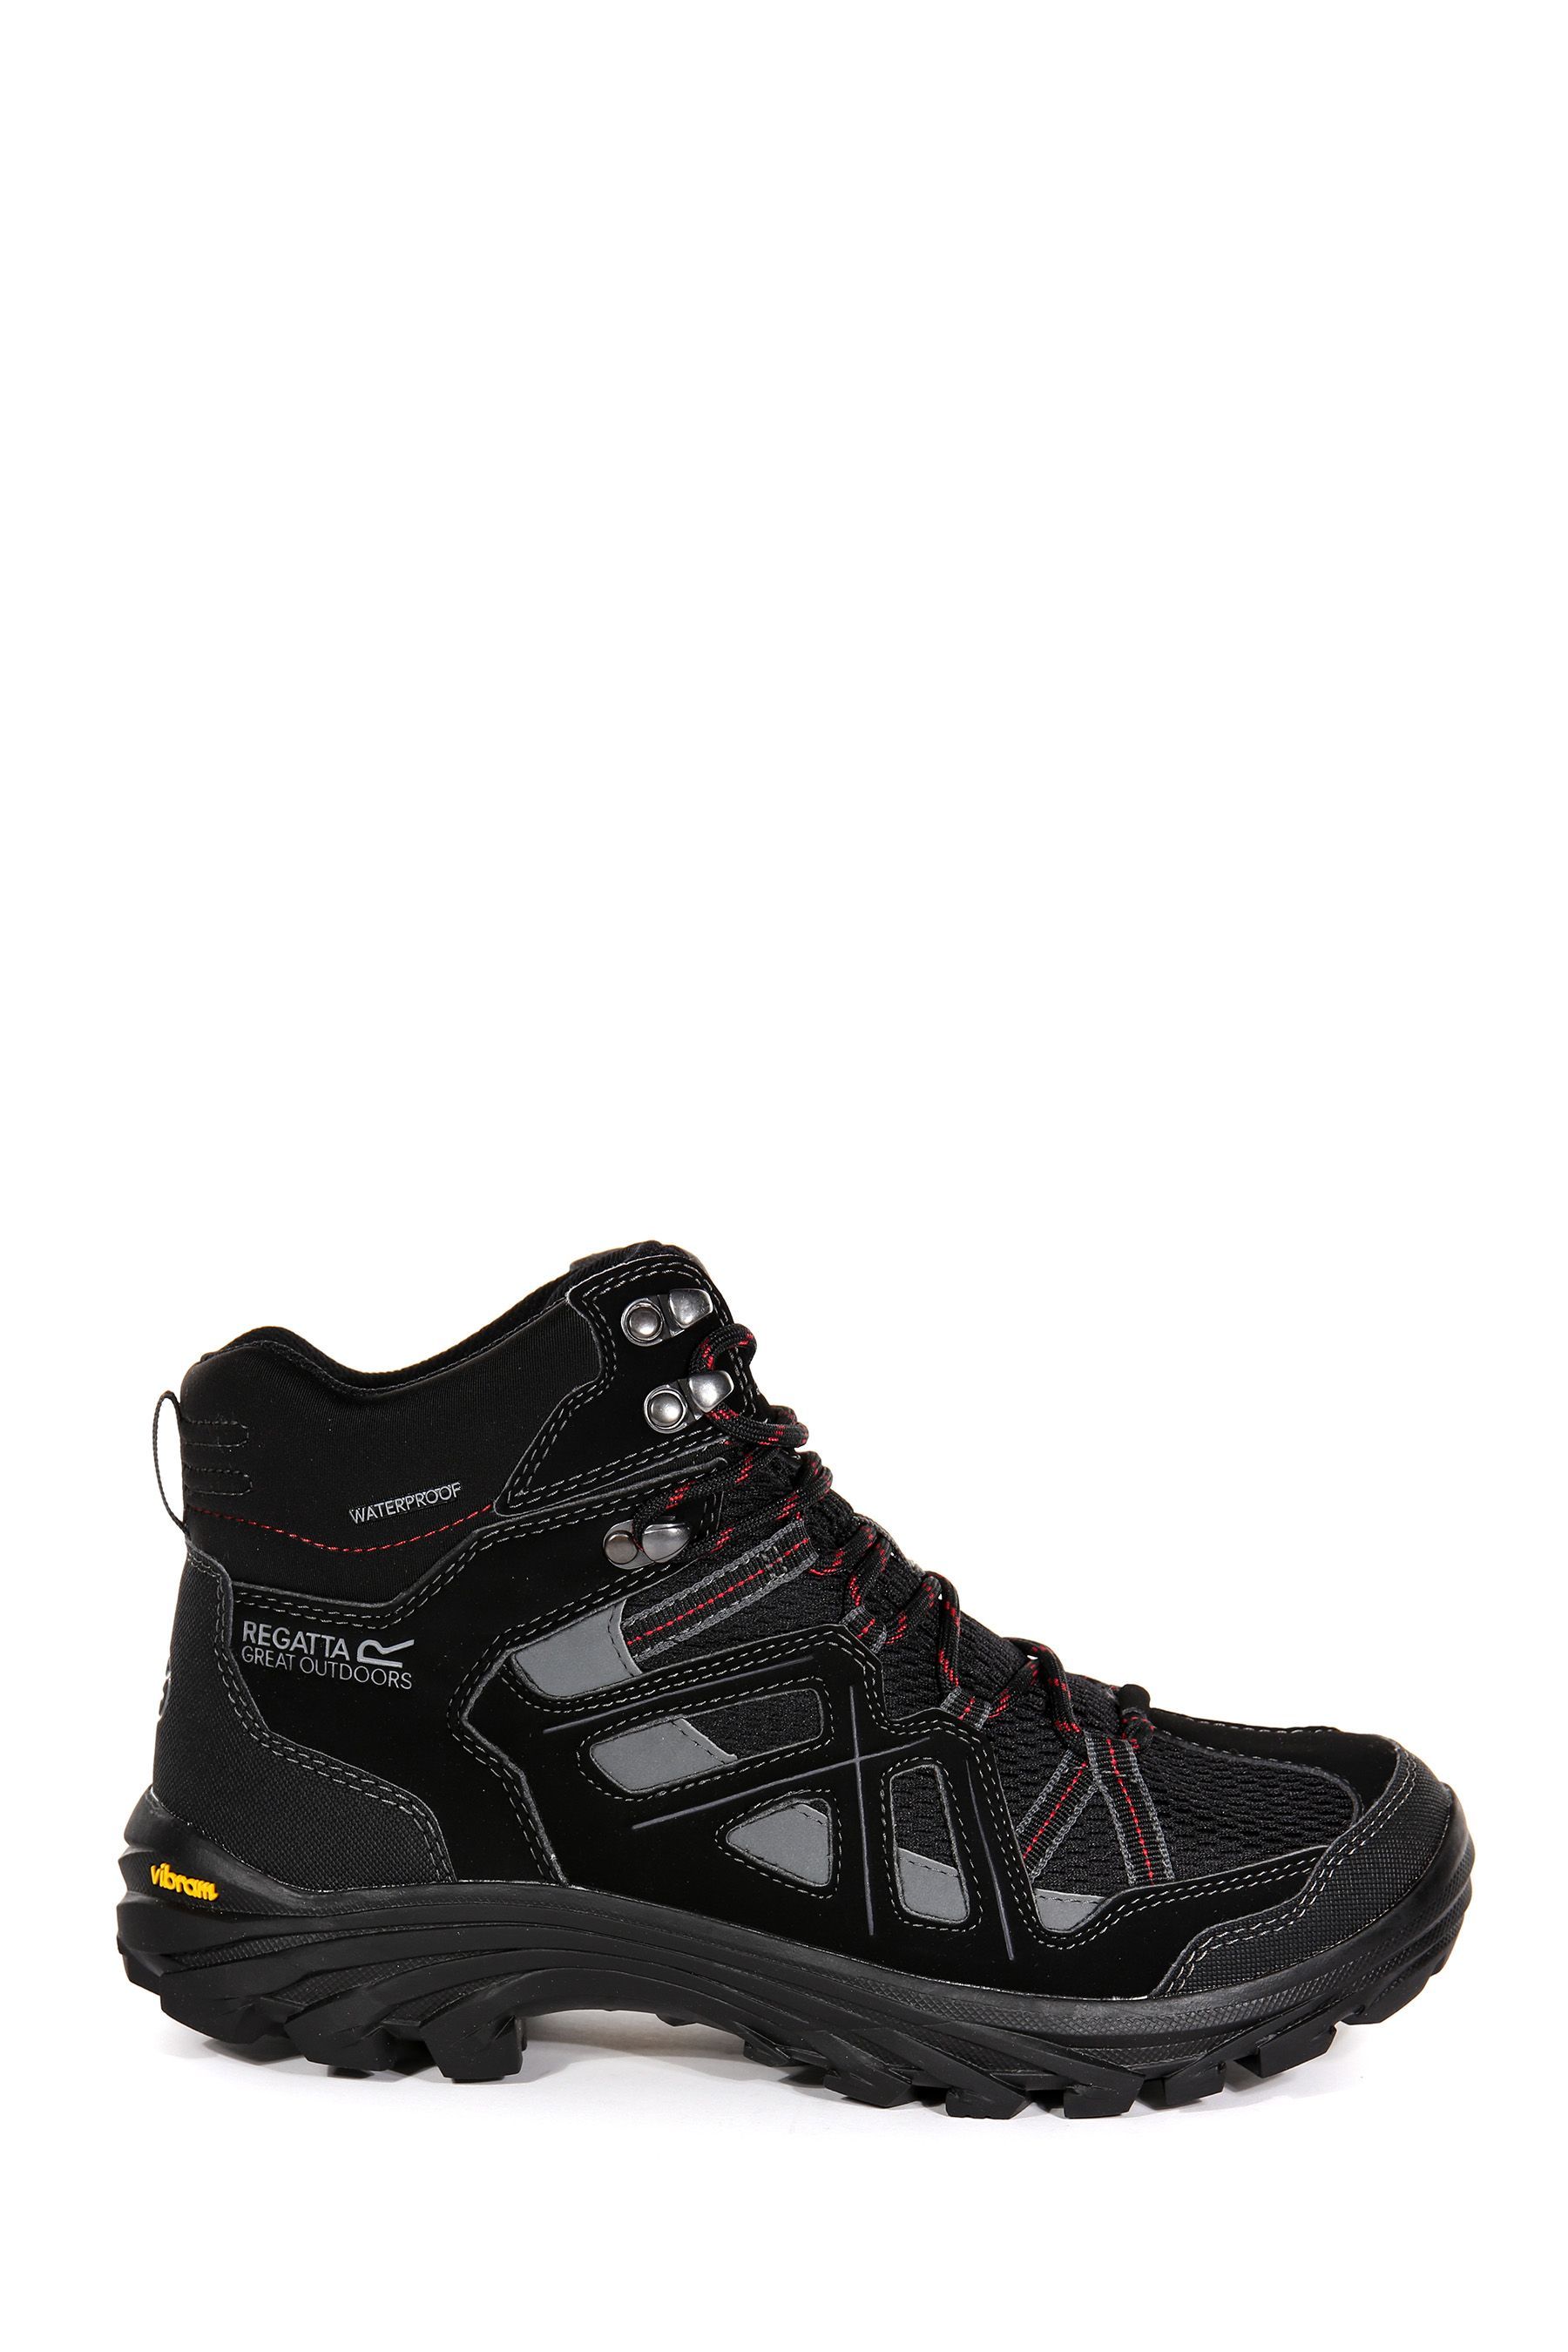 Черные водонепроницаемые походные ботинки Burrell II Regatta, черный